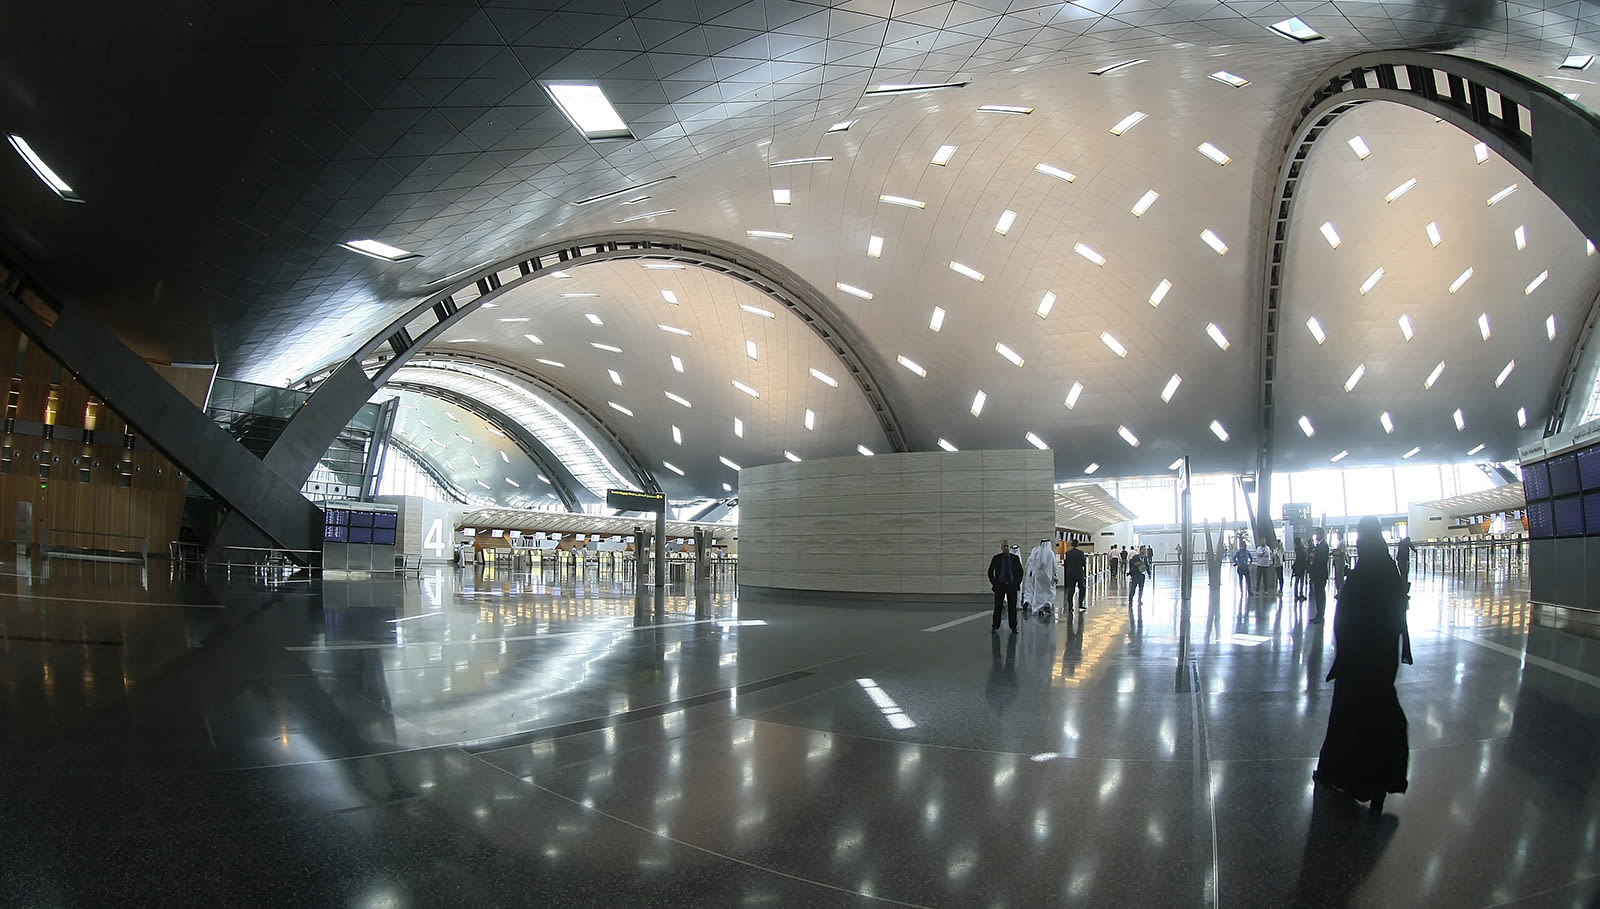 بقطر.. تعرف للتفاصيل الفاخرة لمطار حمد الدولي الذي يُعد الأفضل بالعالم لعام 2021